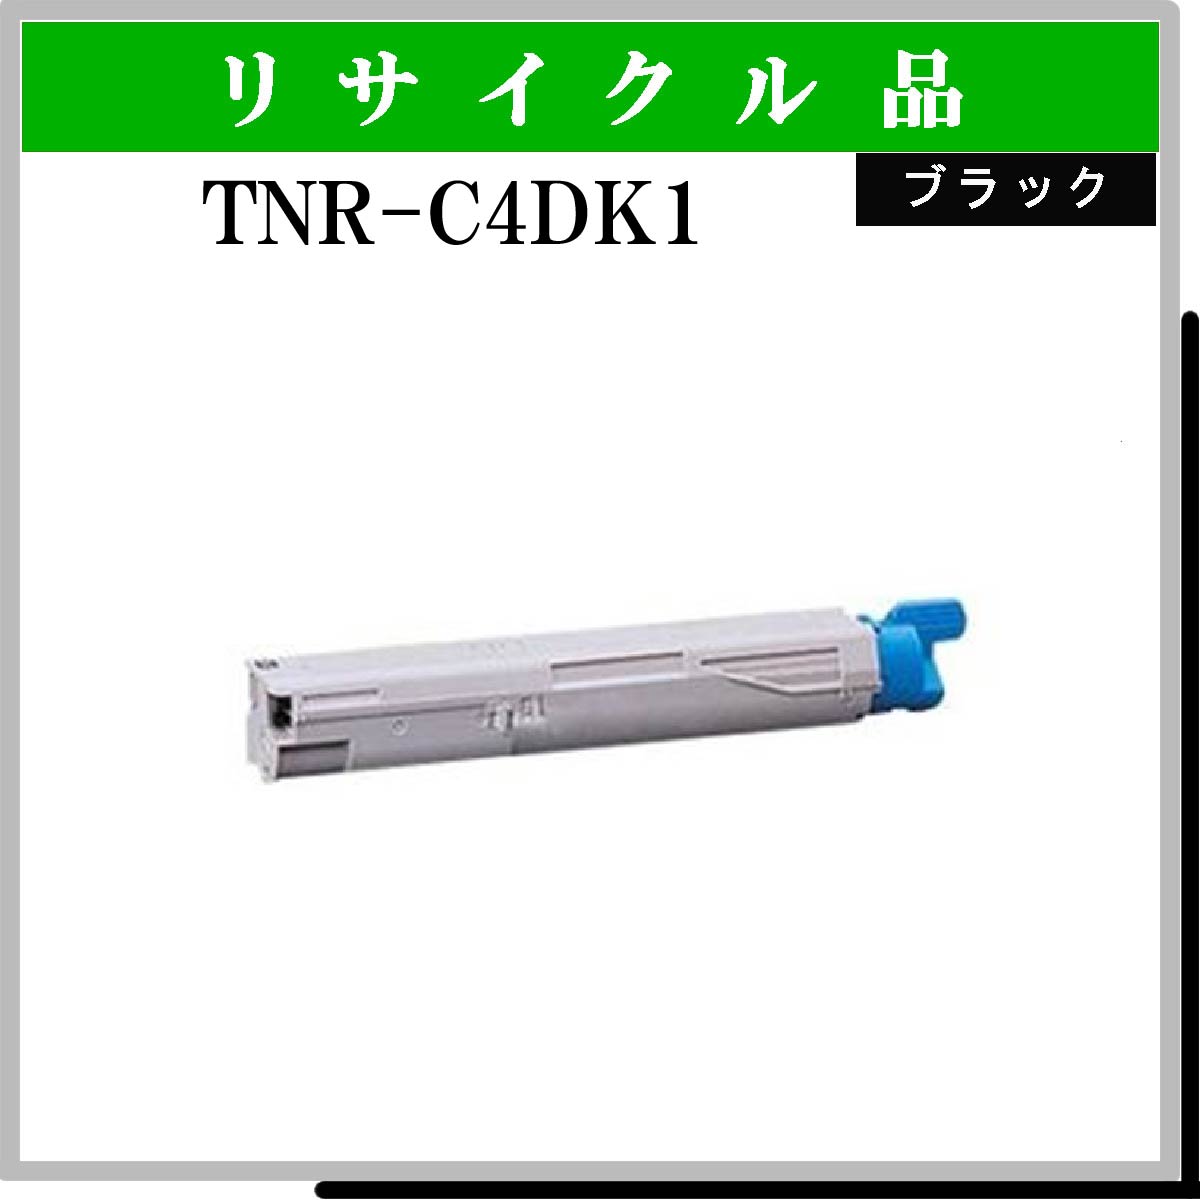 TNR-C4DK1